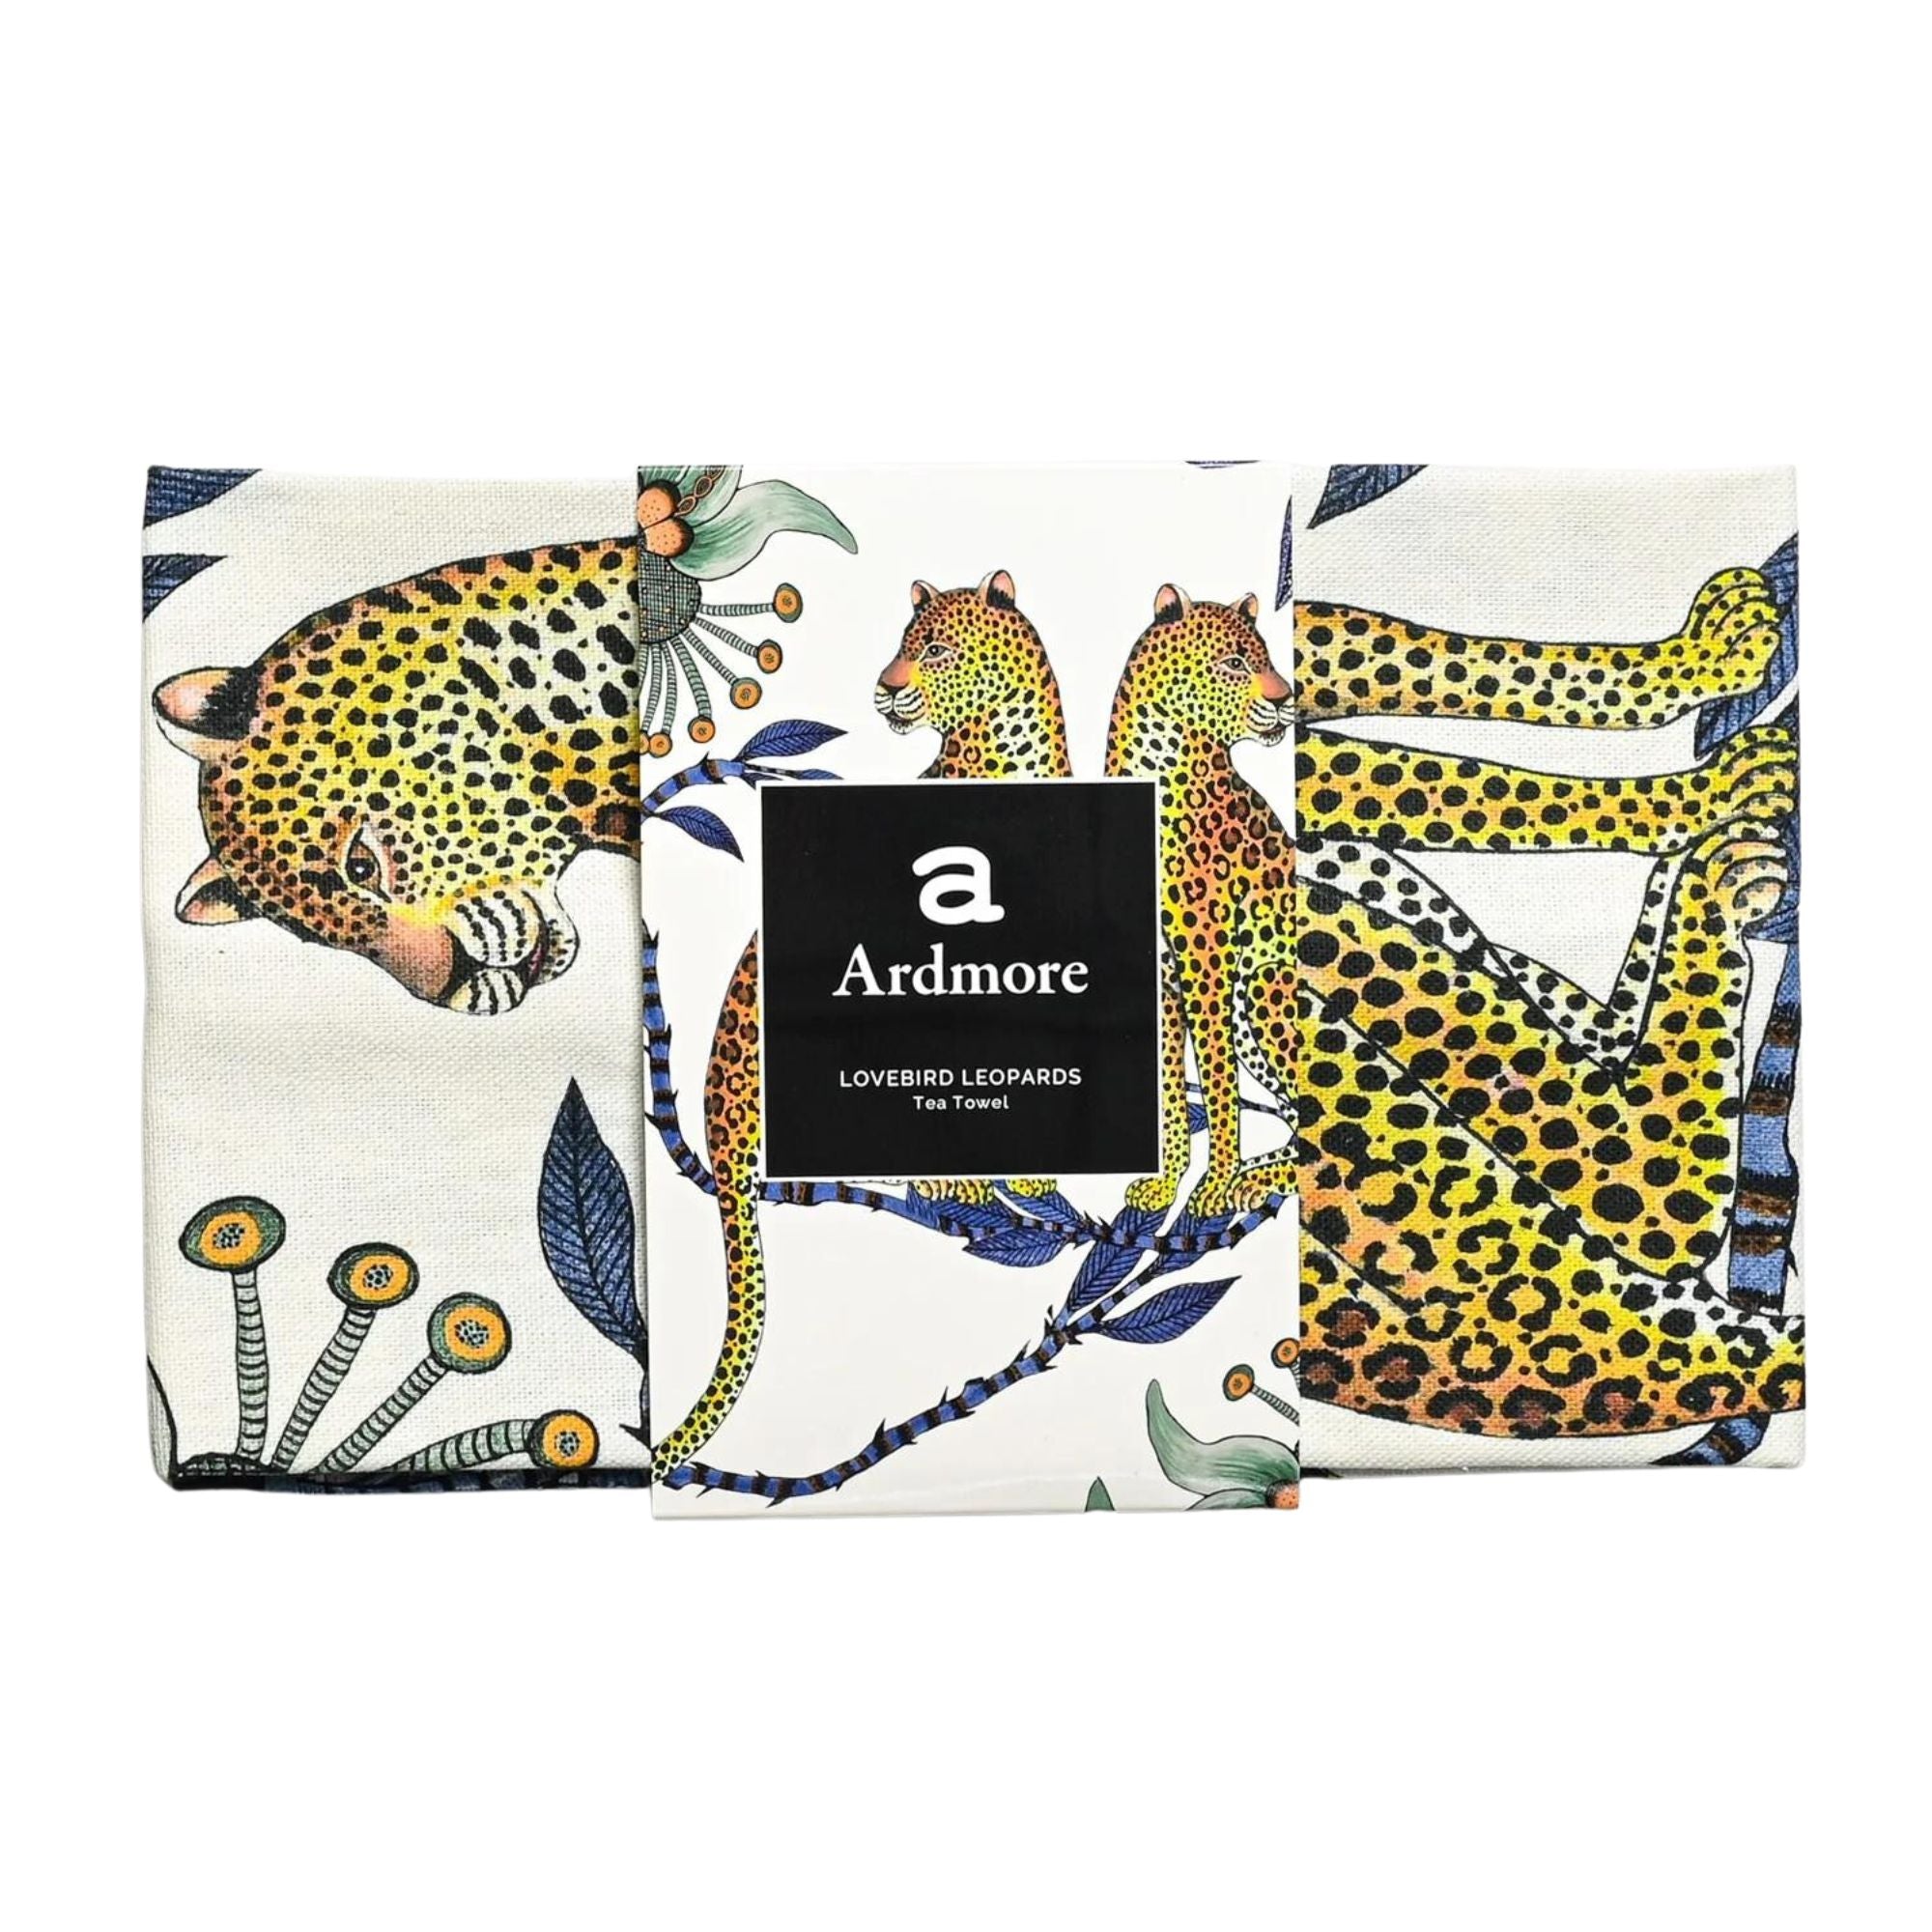 Lovebird Leopards Tea Towel